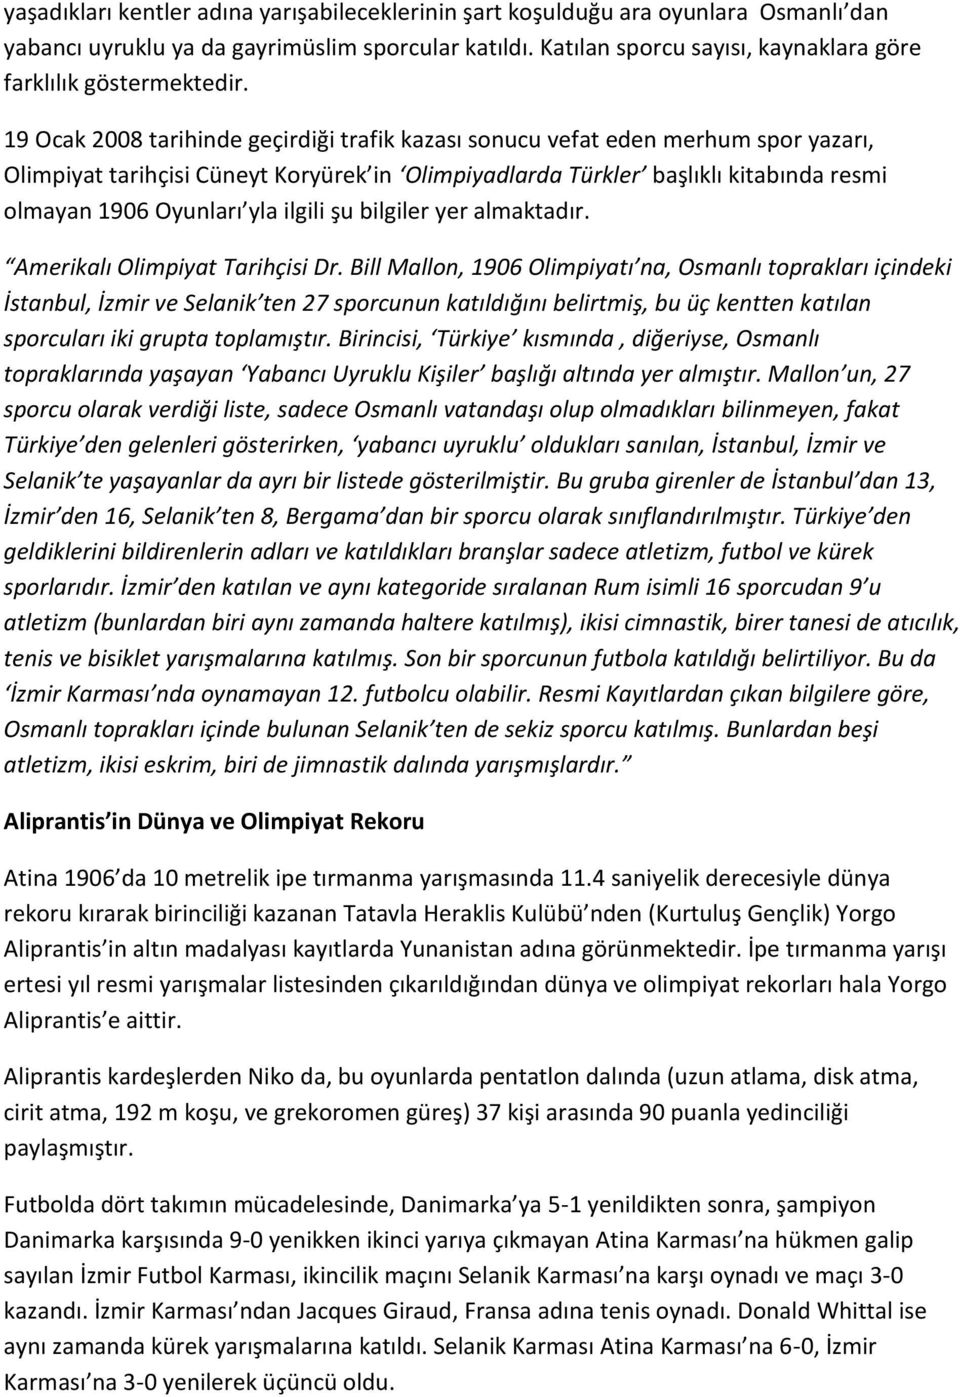 19 Ocak 2008 tarihinde geçirdiği trafik kazası sonucu vefat eden merhum spor yazarı, Olimpiyat tarihçisi Cüneyt Koryürek in Olimpiyadlarda Türkler başlıklı kitabında resmi olmayan 1906 Oyunları yla